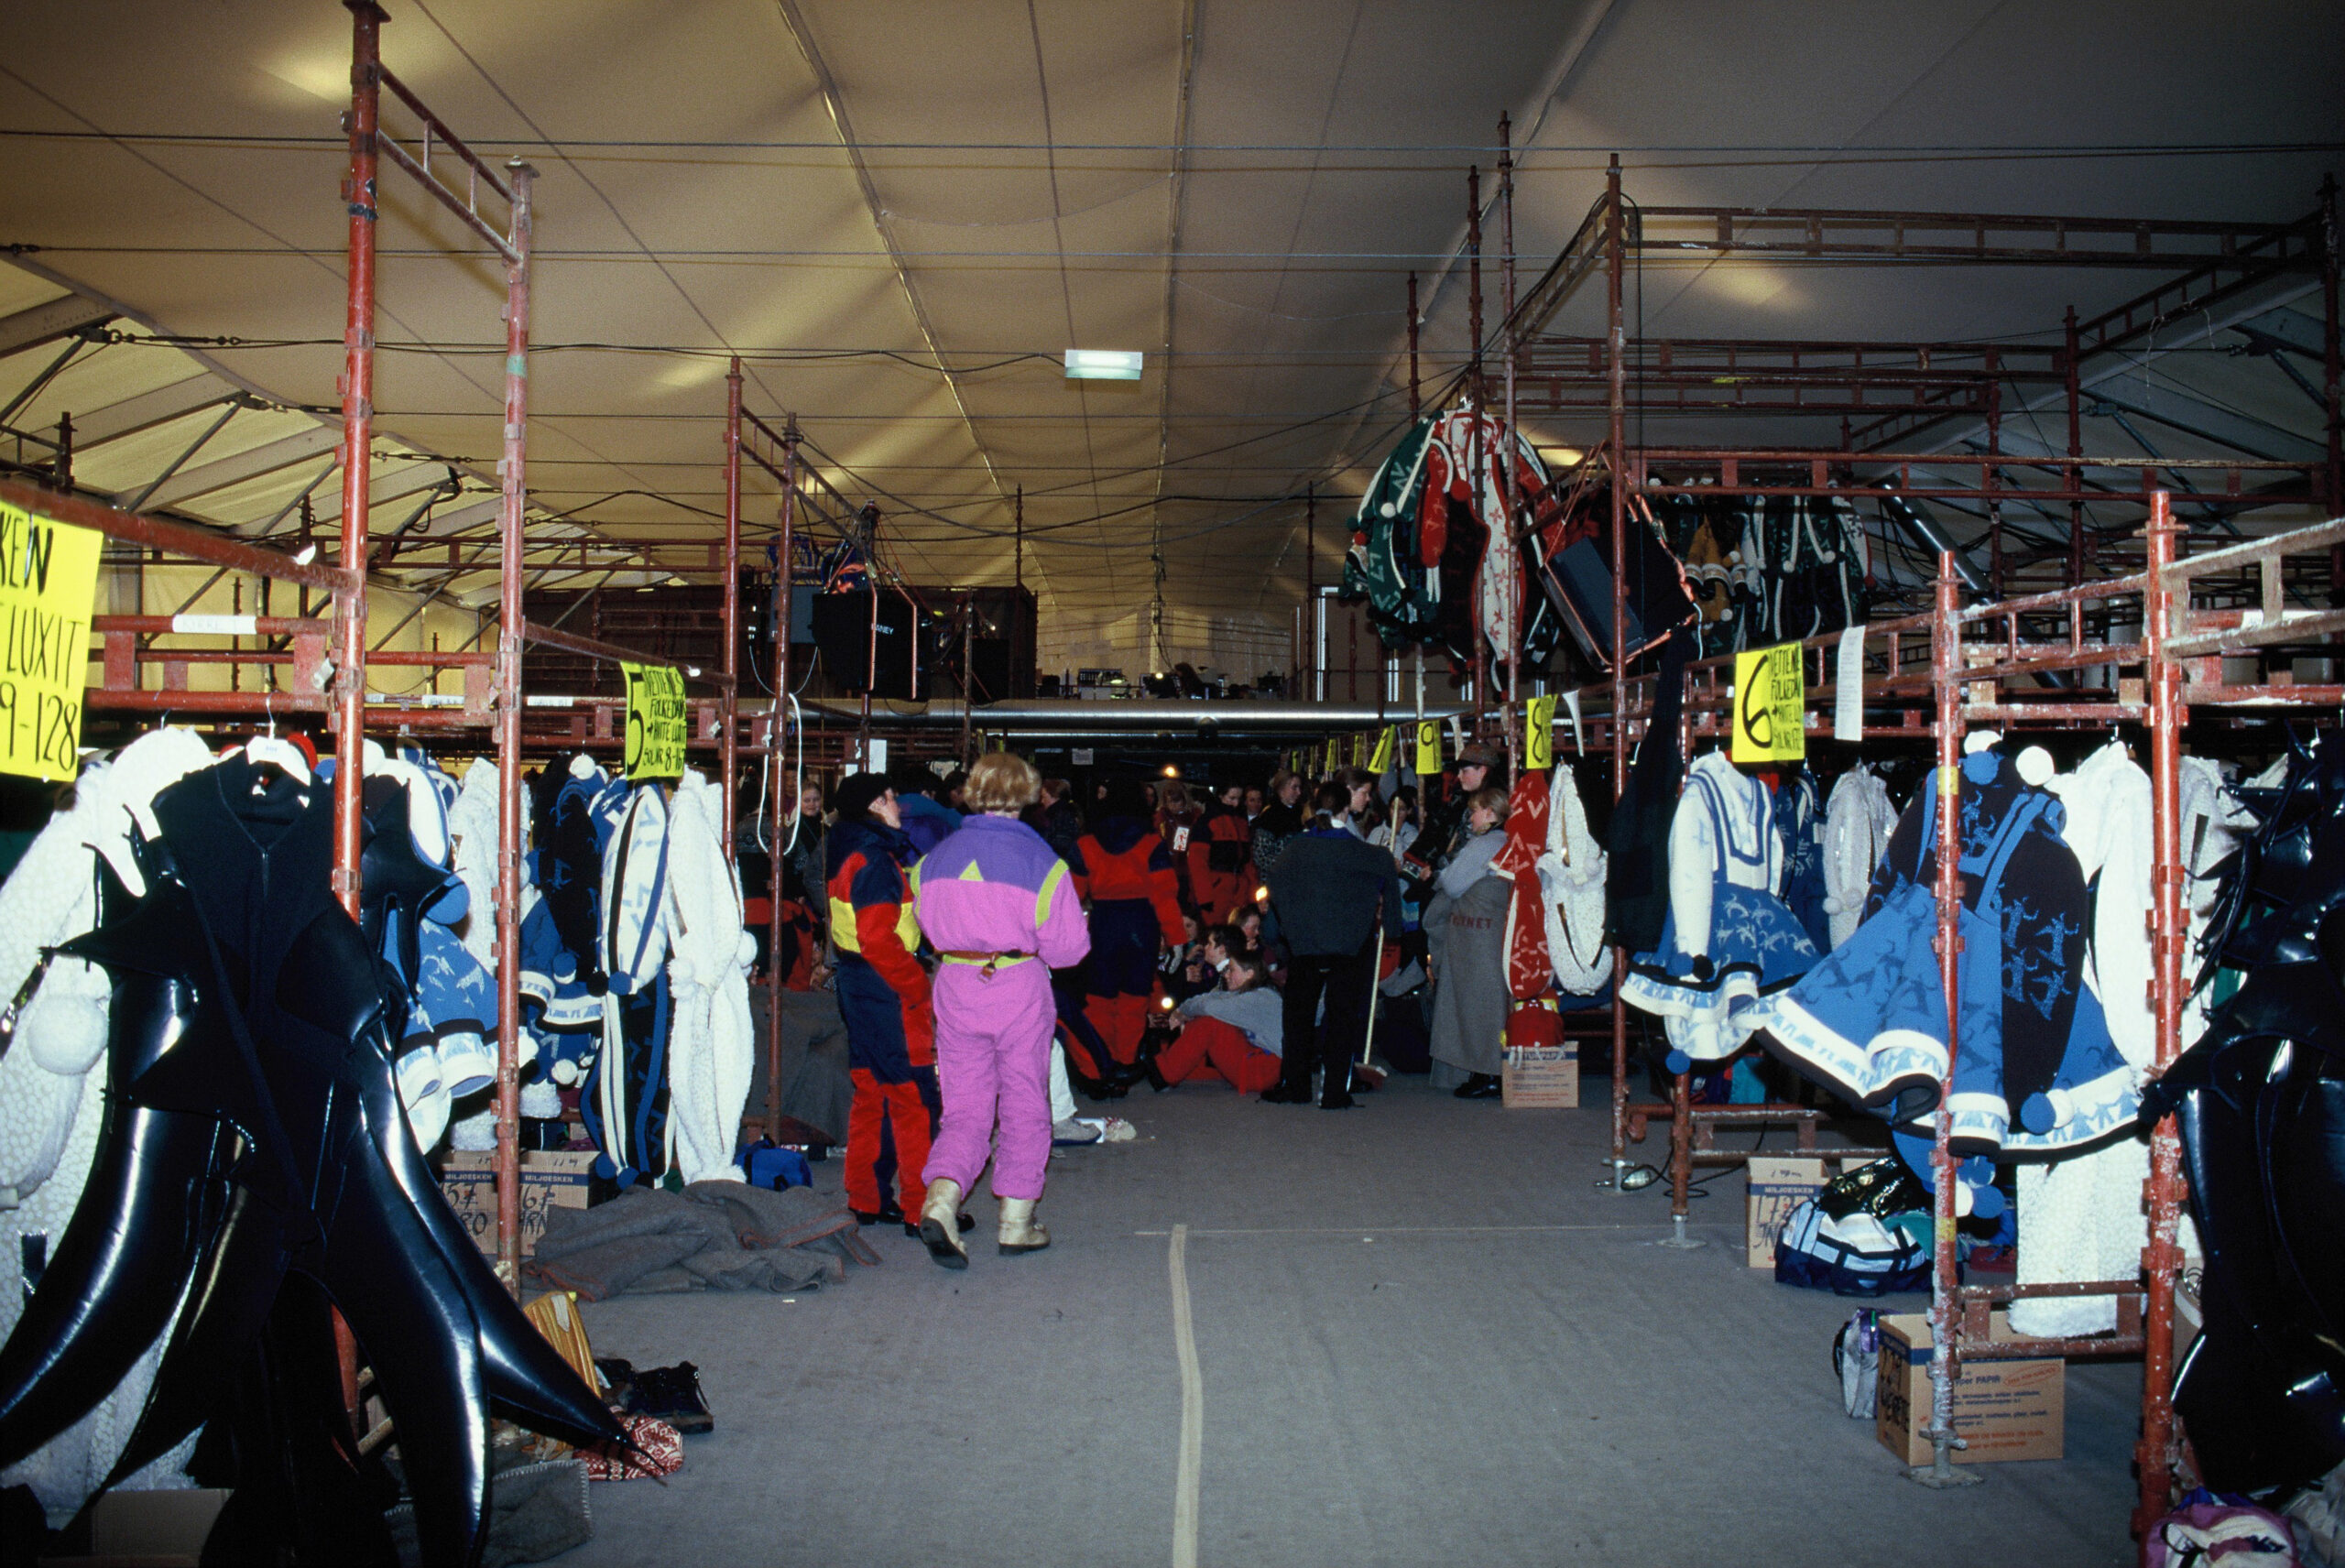 OB Wiik-telt og olympisk garderobe for vetter. Foto: Björn Sandberg.